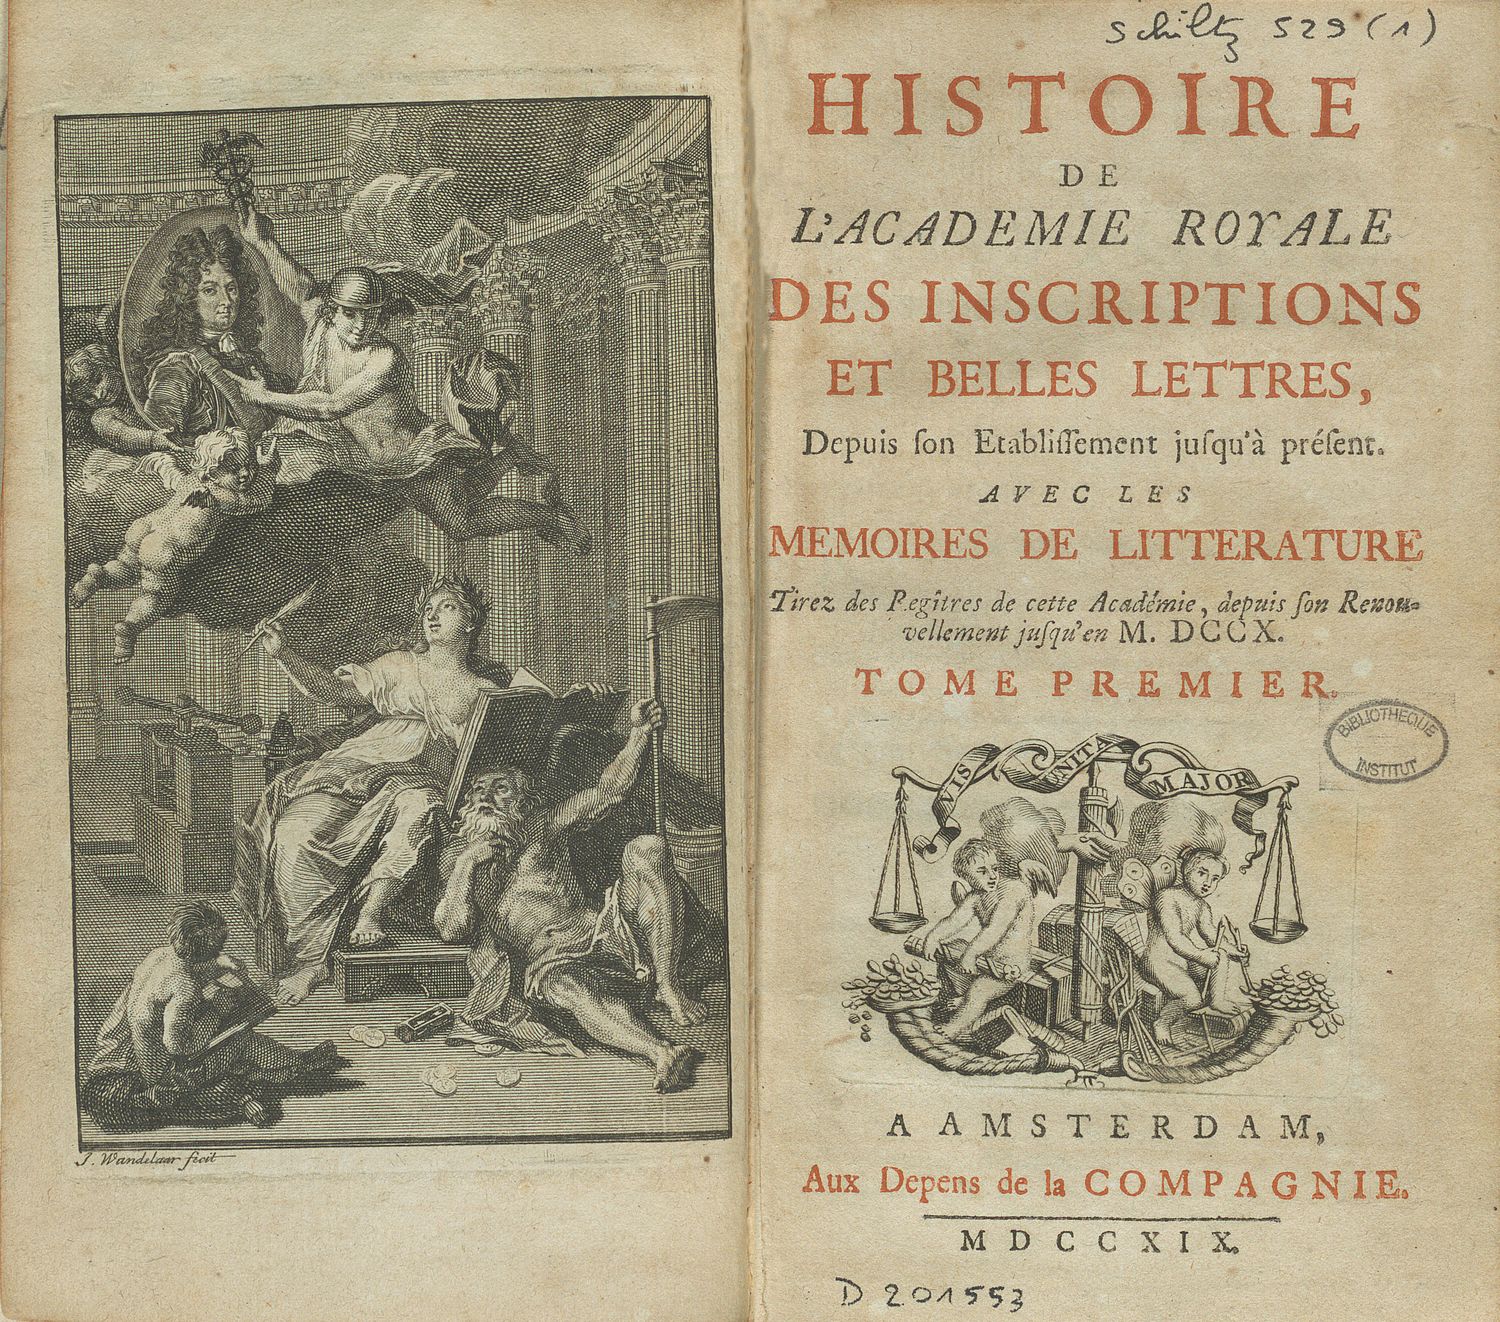 Histoire de l'Académie royale des inscriptions et belles lettres